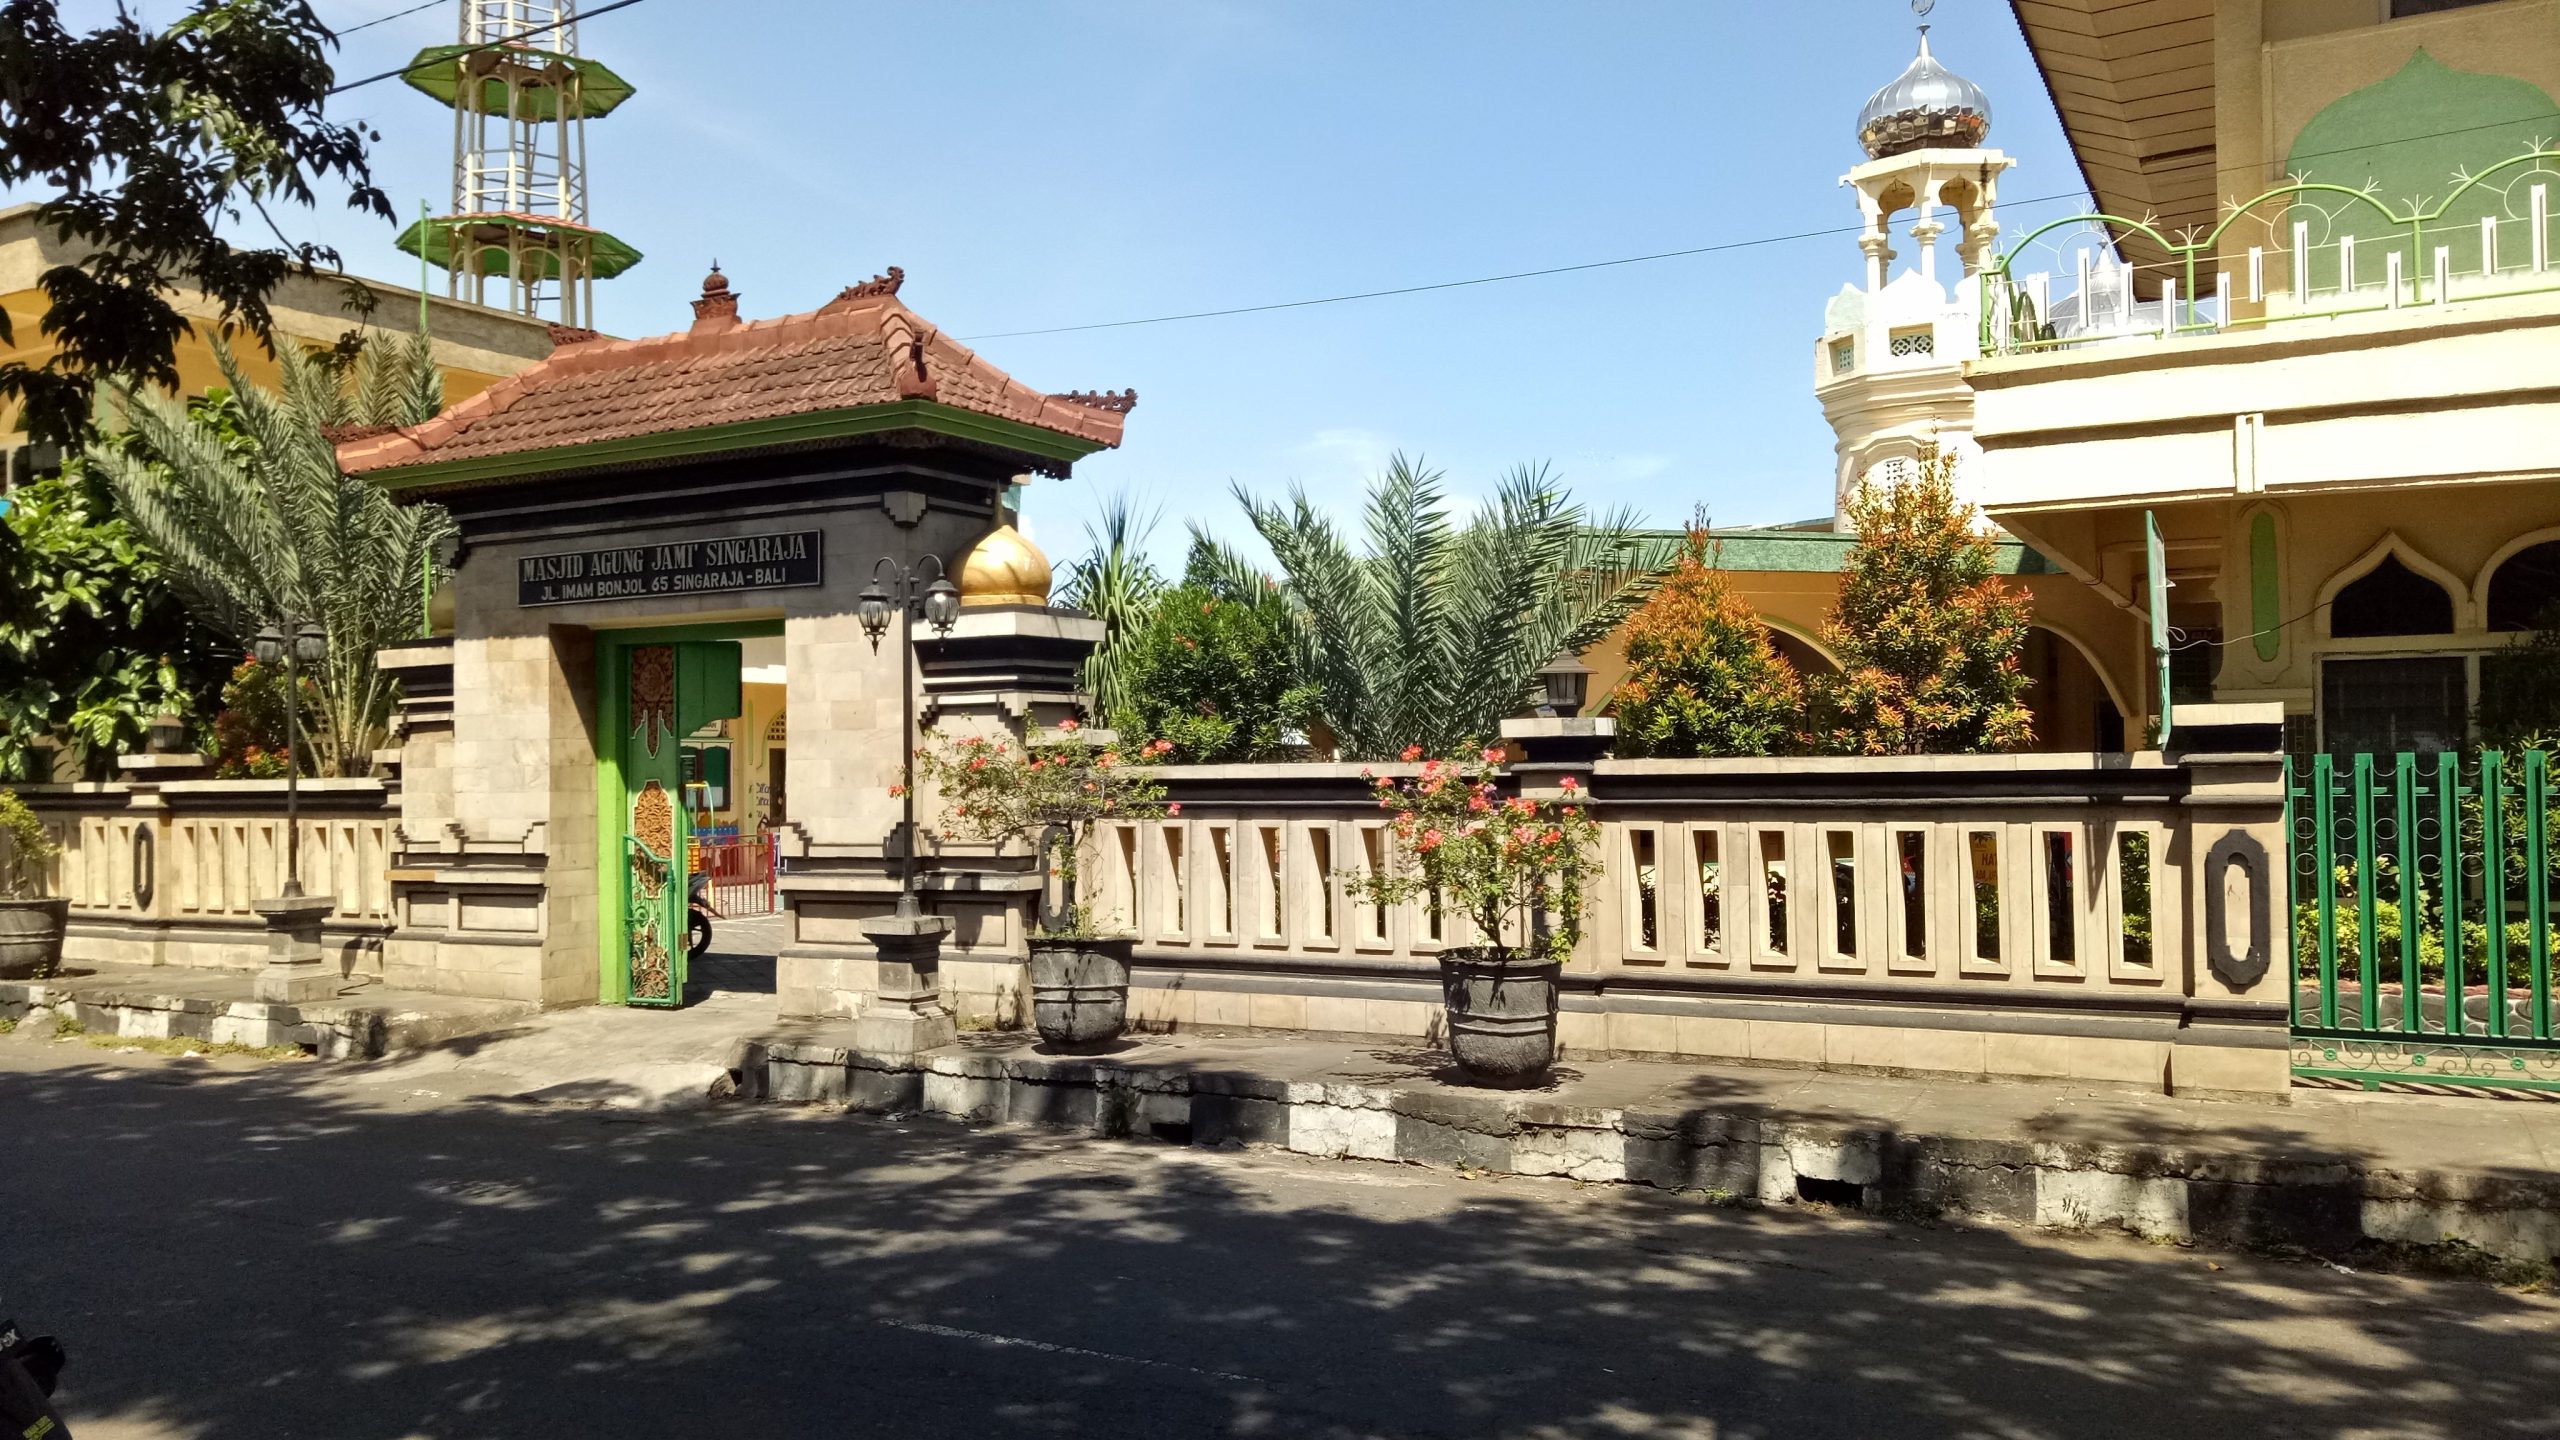 Gaya bangunan Masjid Agung Jami Singaraja peninggalan Kerajaan Buleleng di Bali